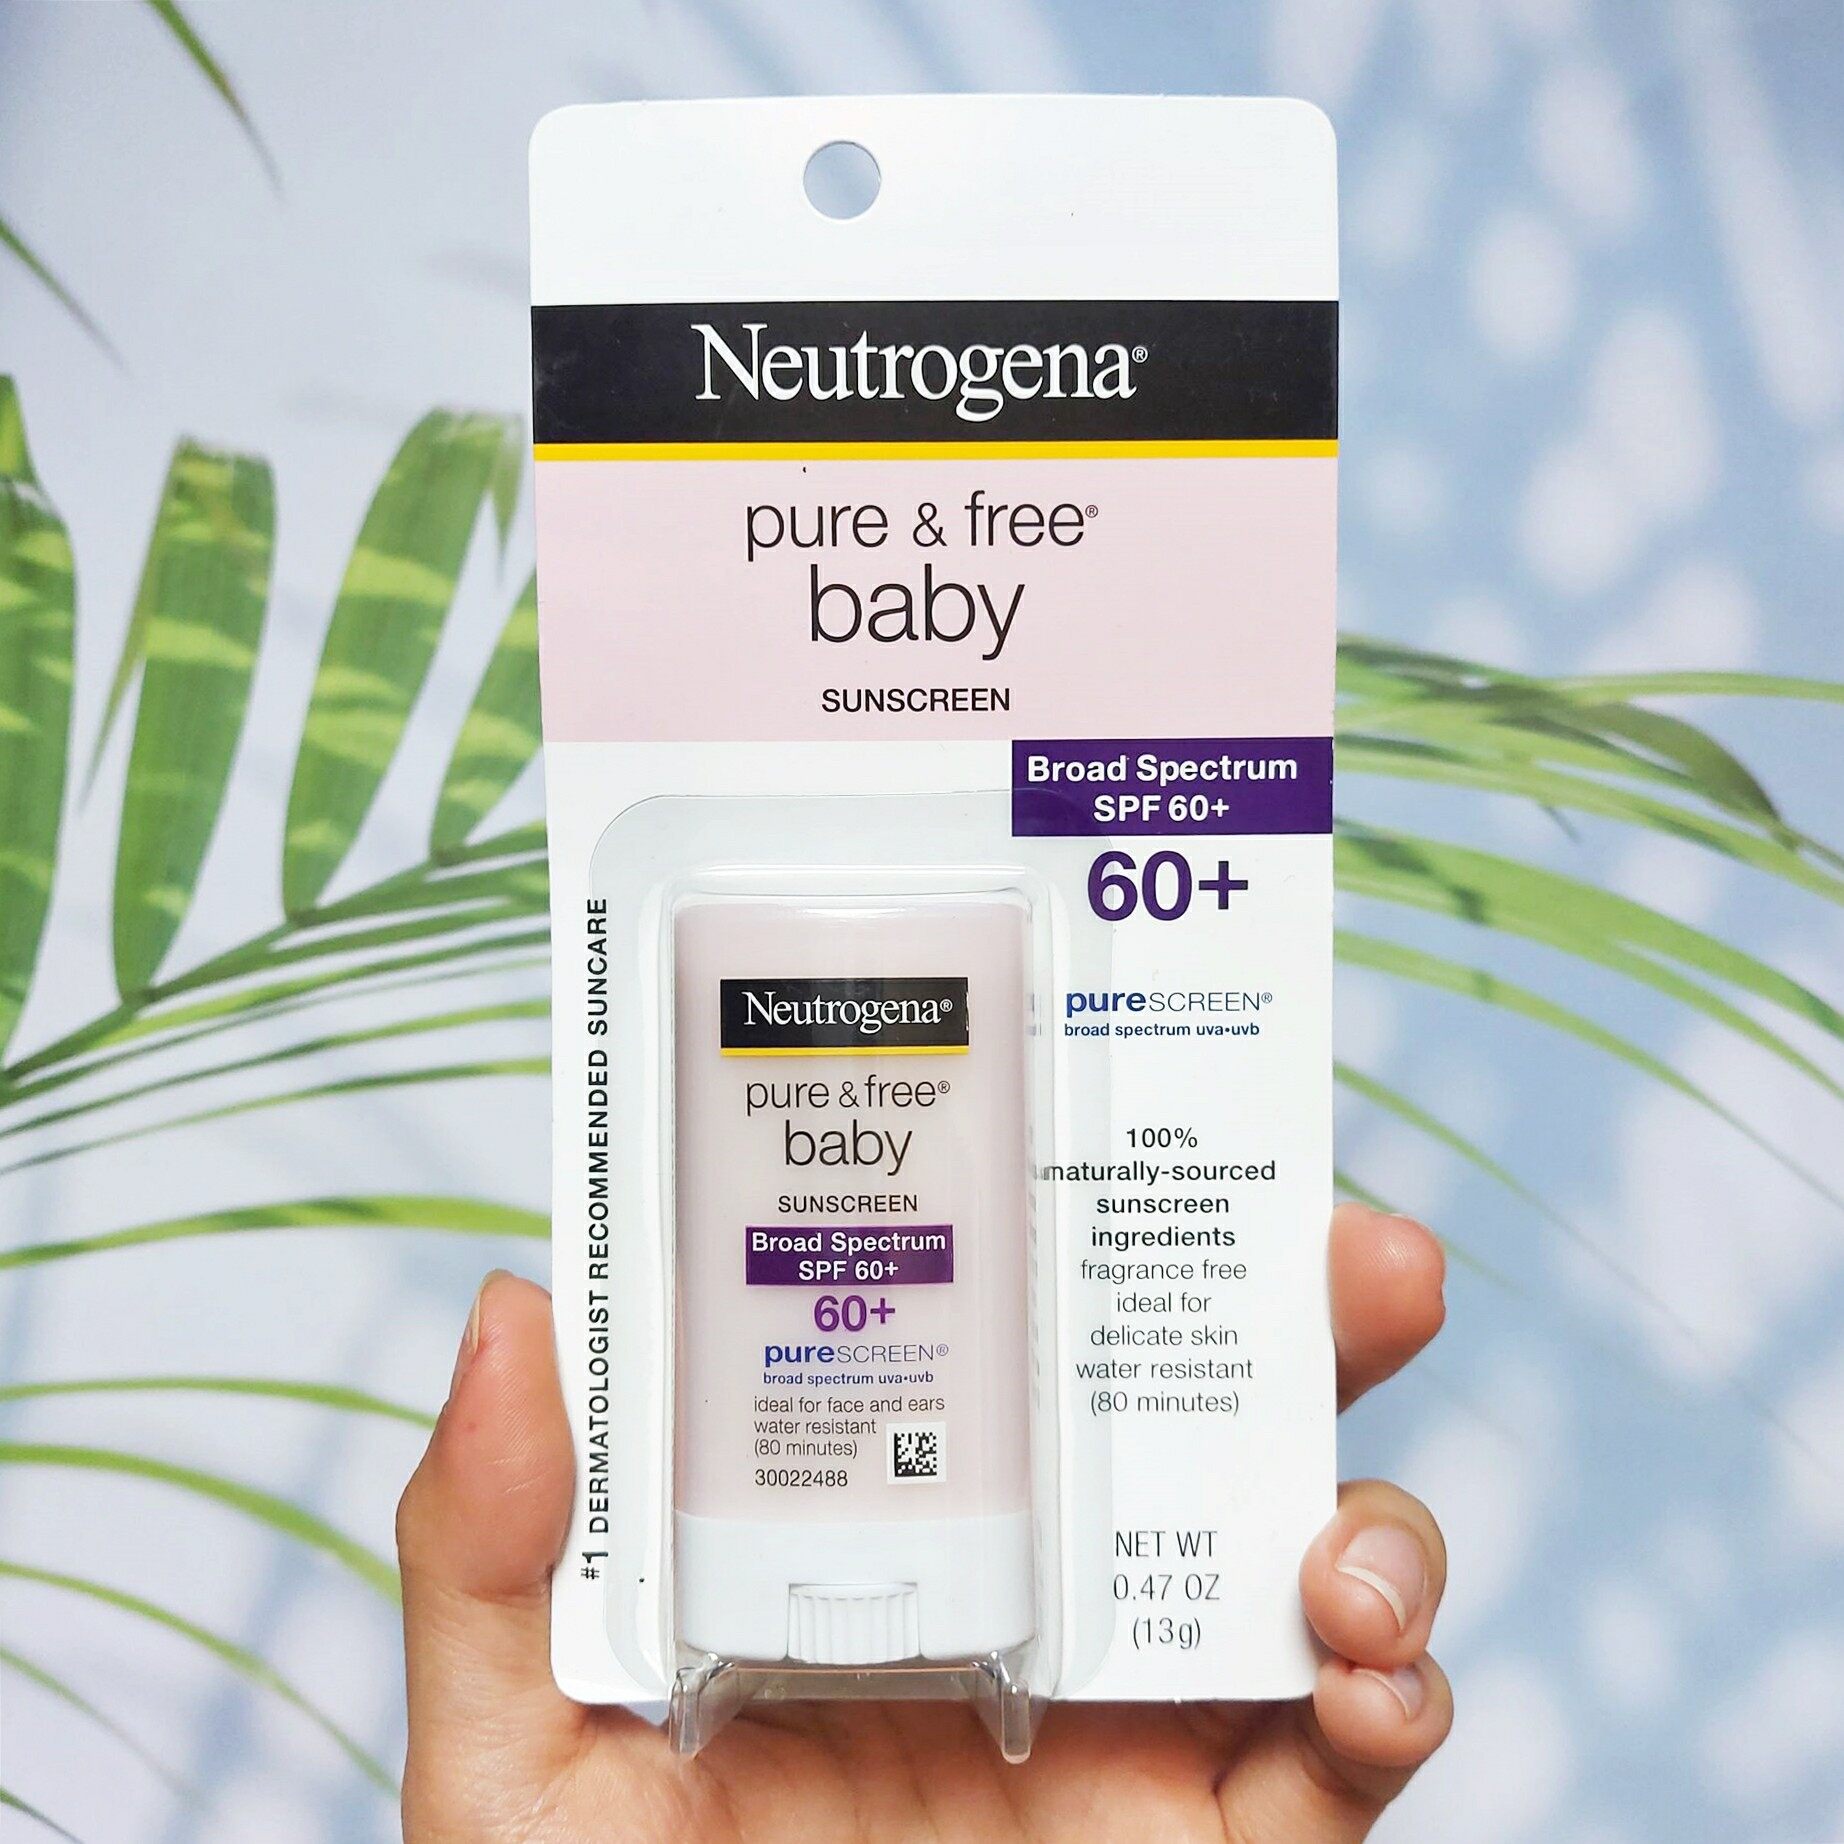 นูโทรจีนา ครีมกันแดด สำหรับเด็ก Pure & Free Baby Sunscreen SPF 60+ 13g (Neutrogena®) แบบแท่ง เหมาะสำหรับผิวบอบบาง